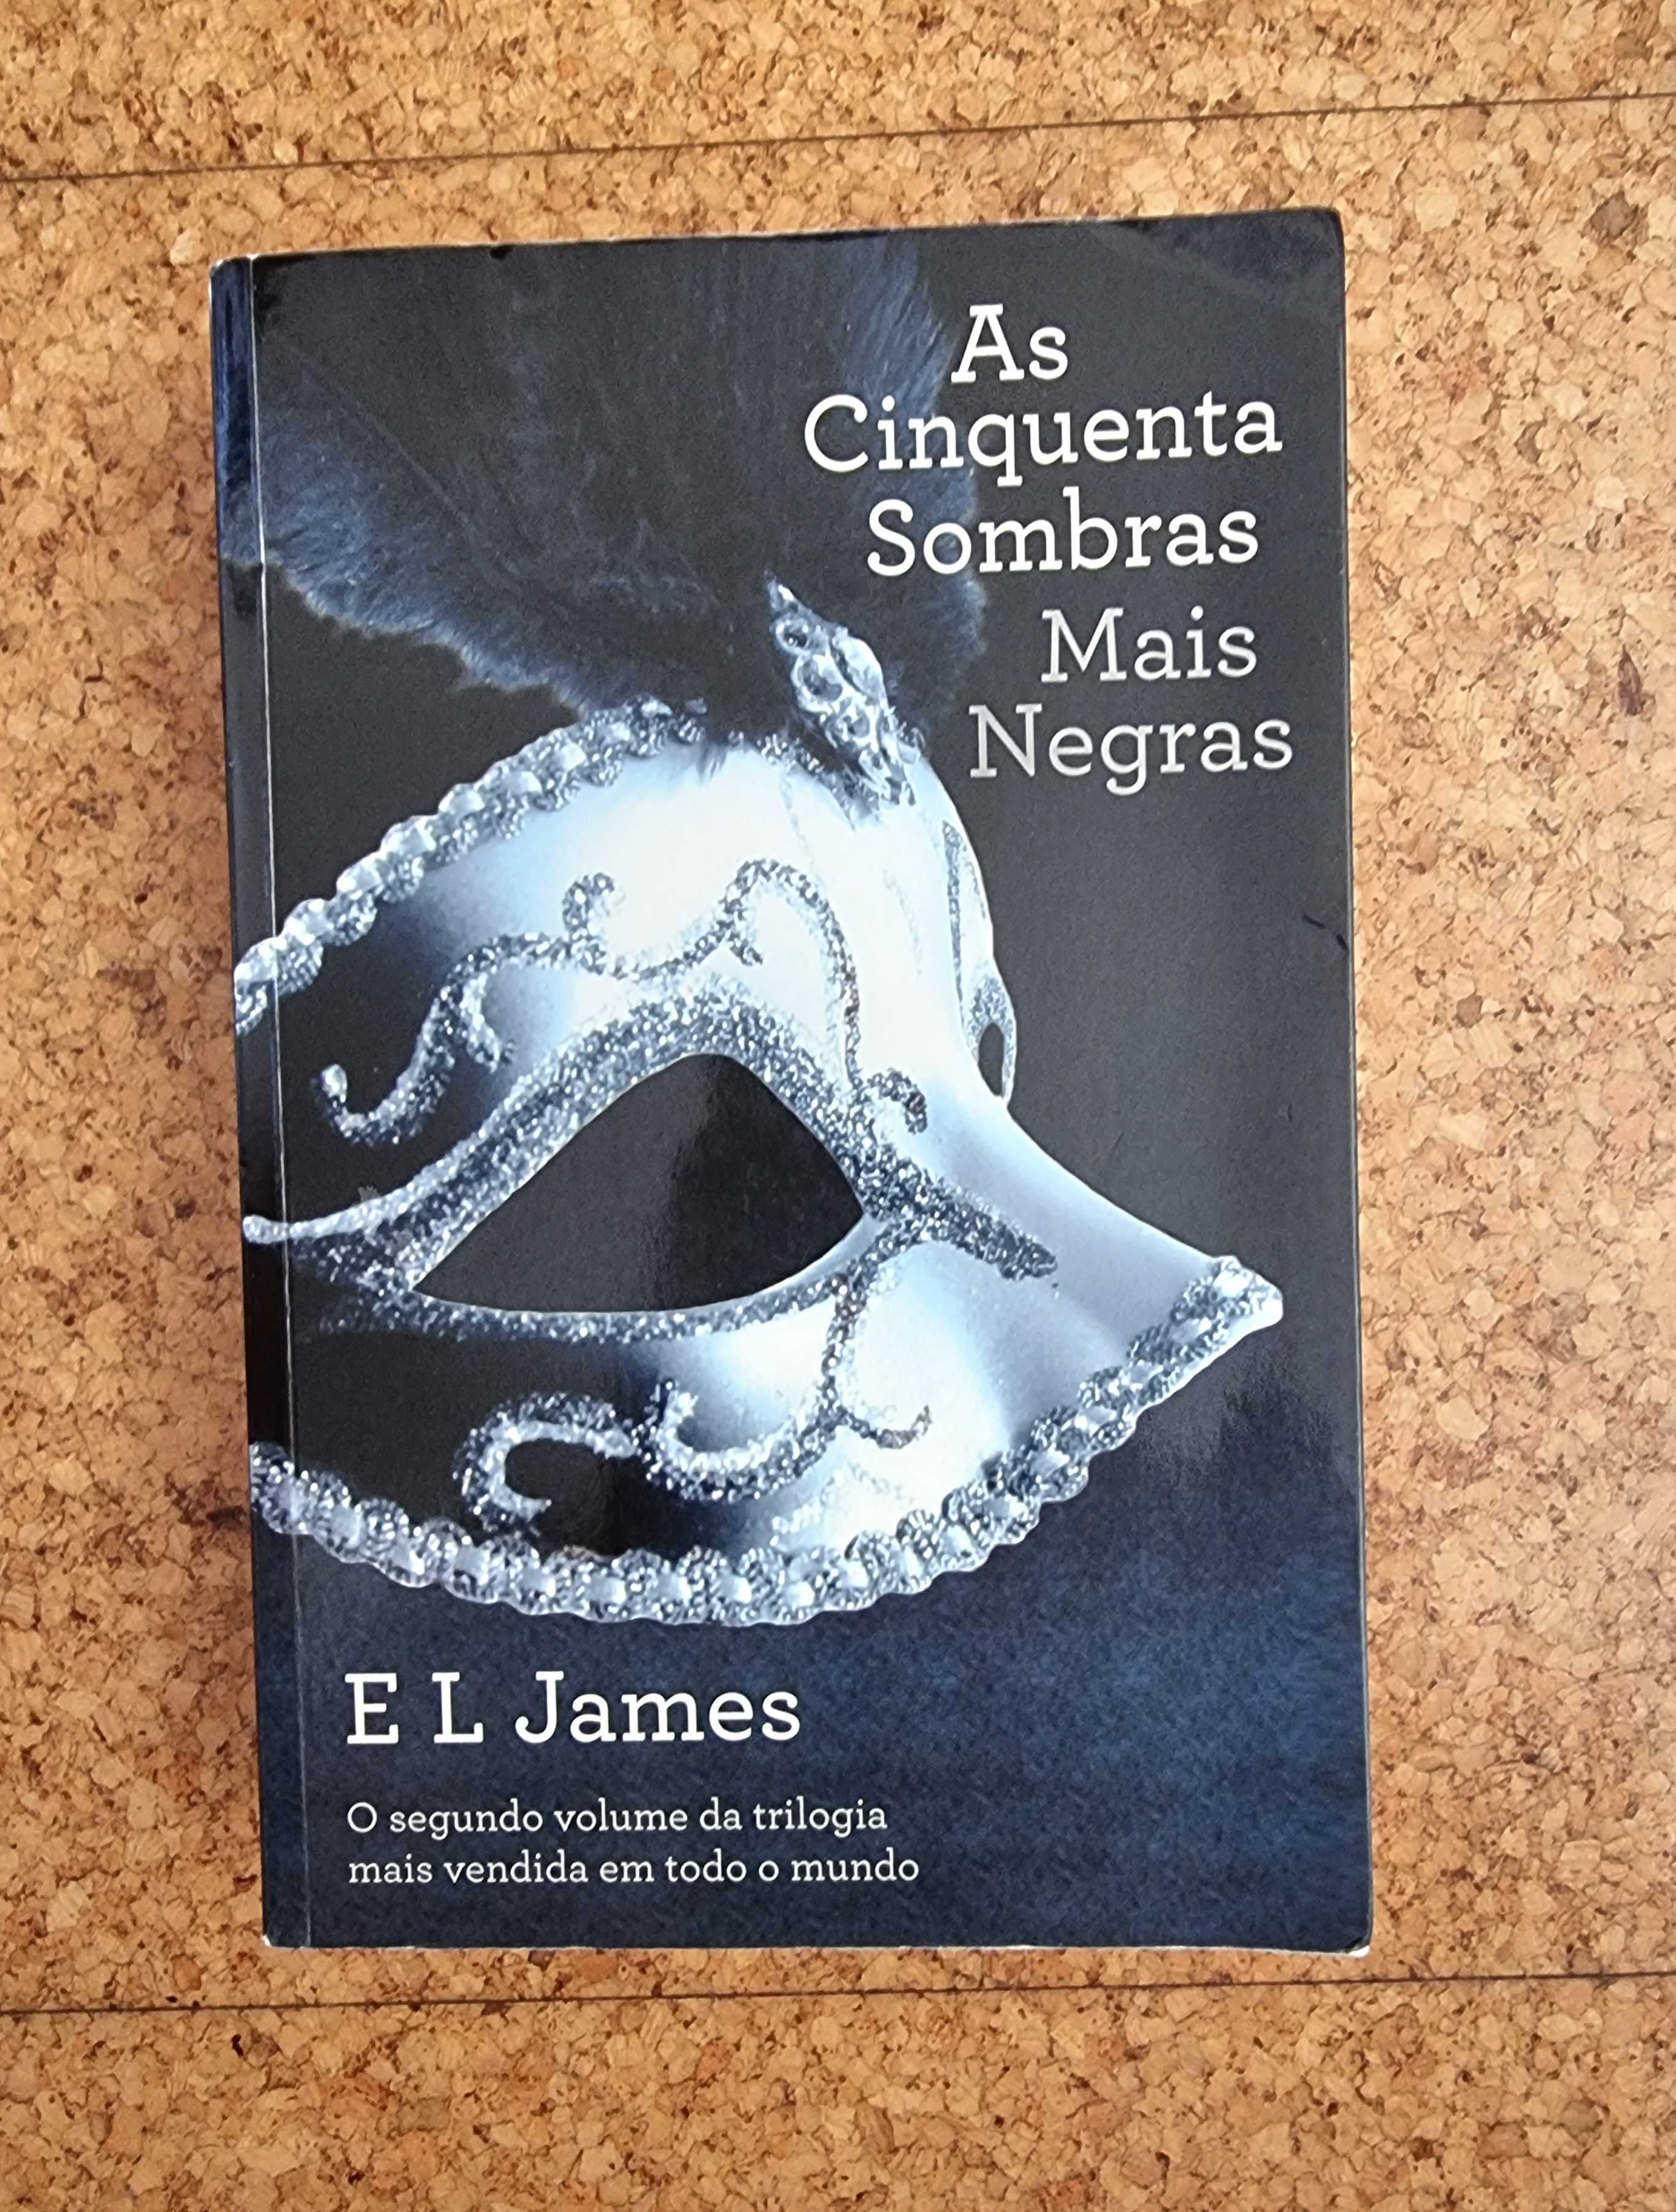 Livro "As Cinquenta Sombras Mais Negras" de E. L. James